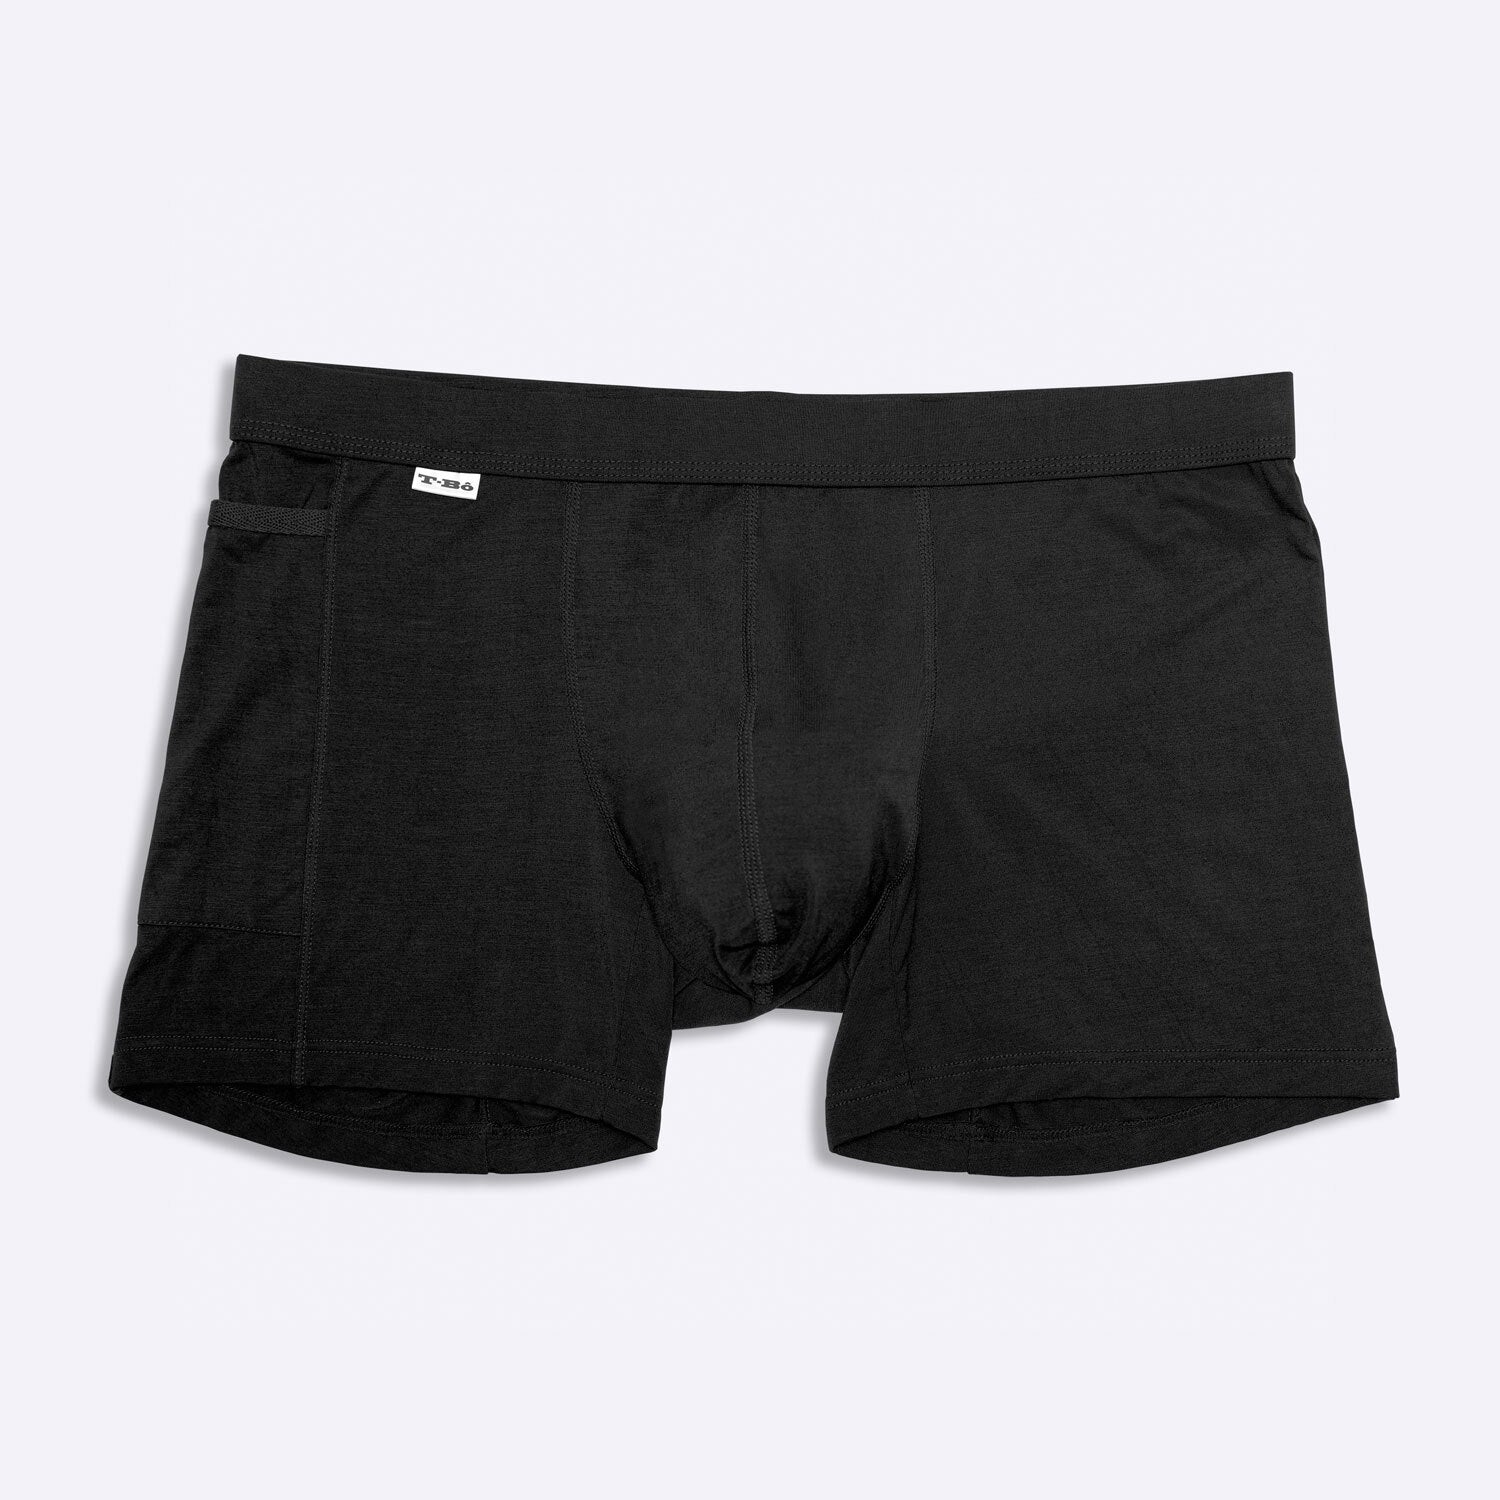 Boxer Brief | Men's Bamboo Underwear | T-Bô Bodywear - TBô underwear